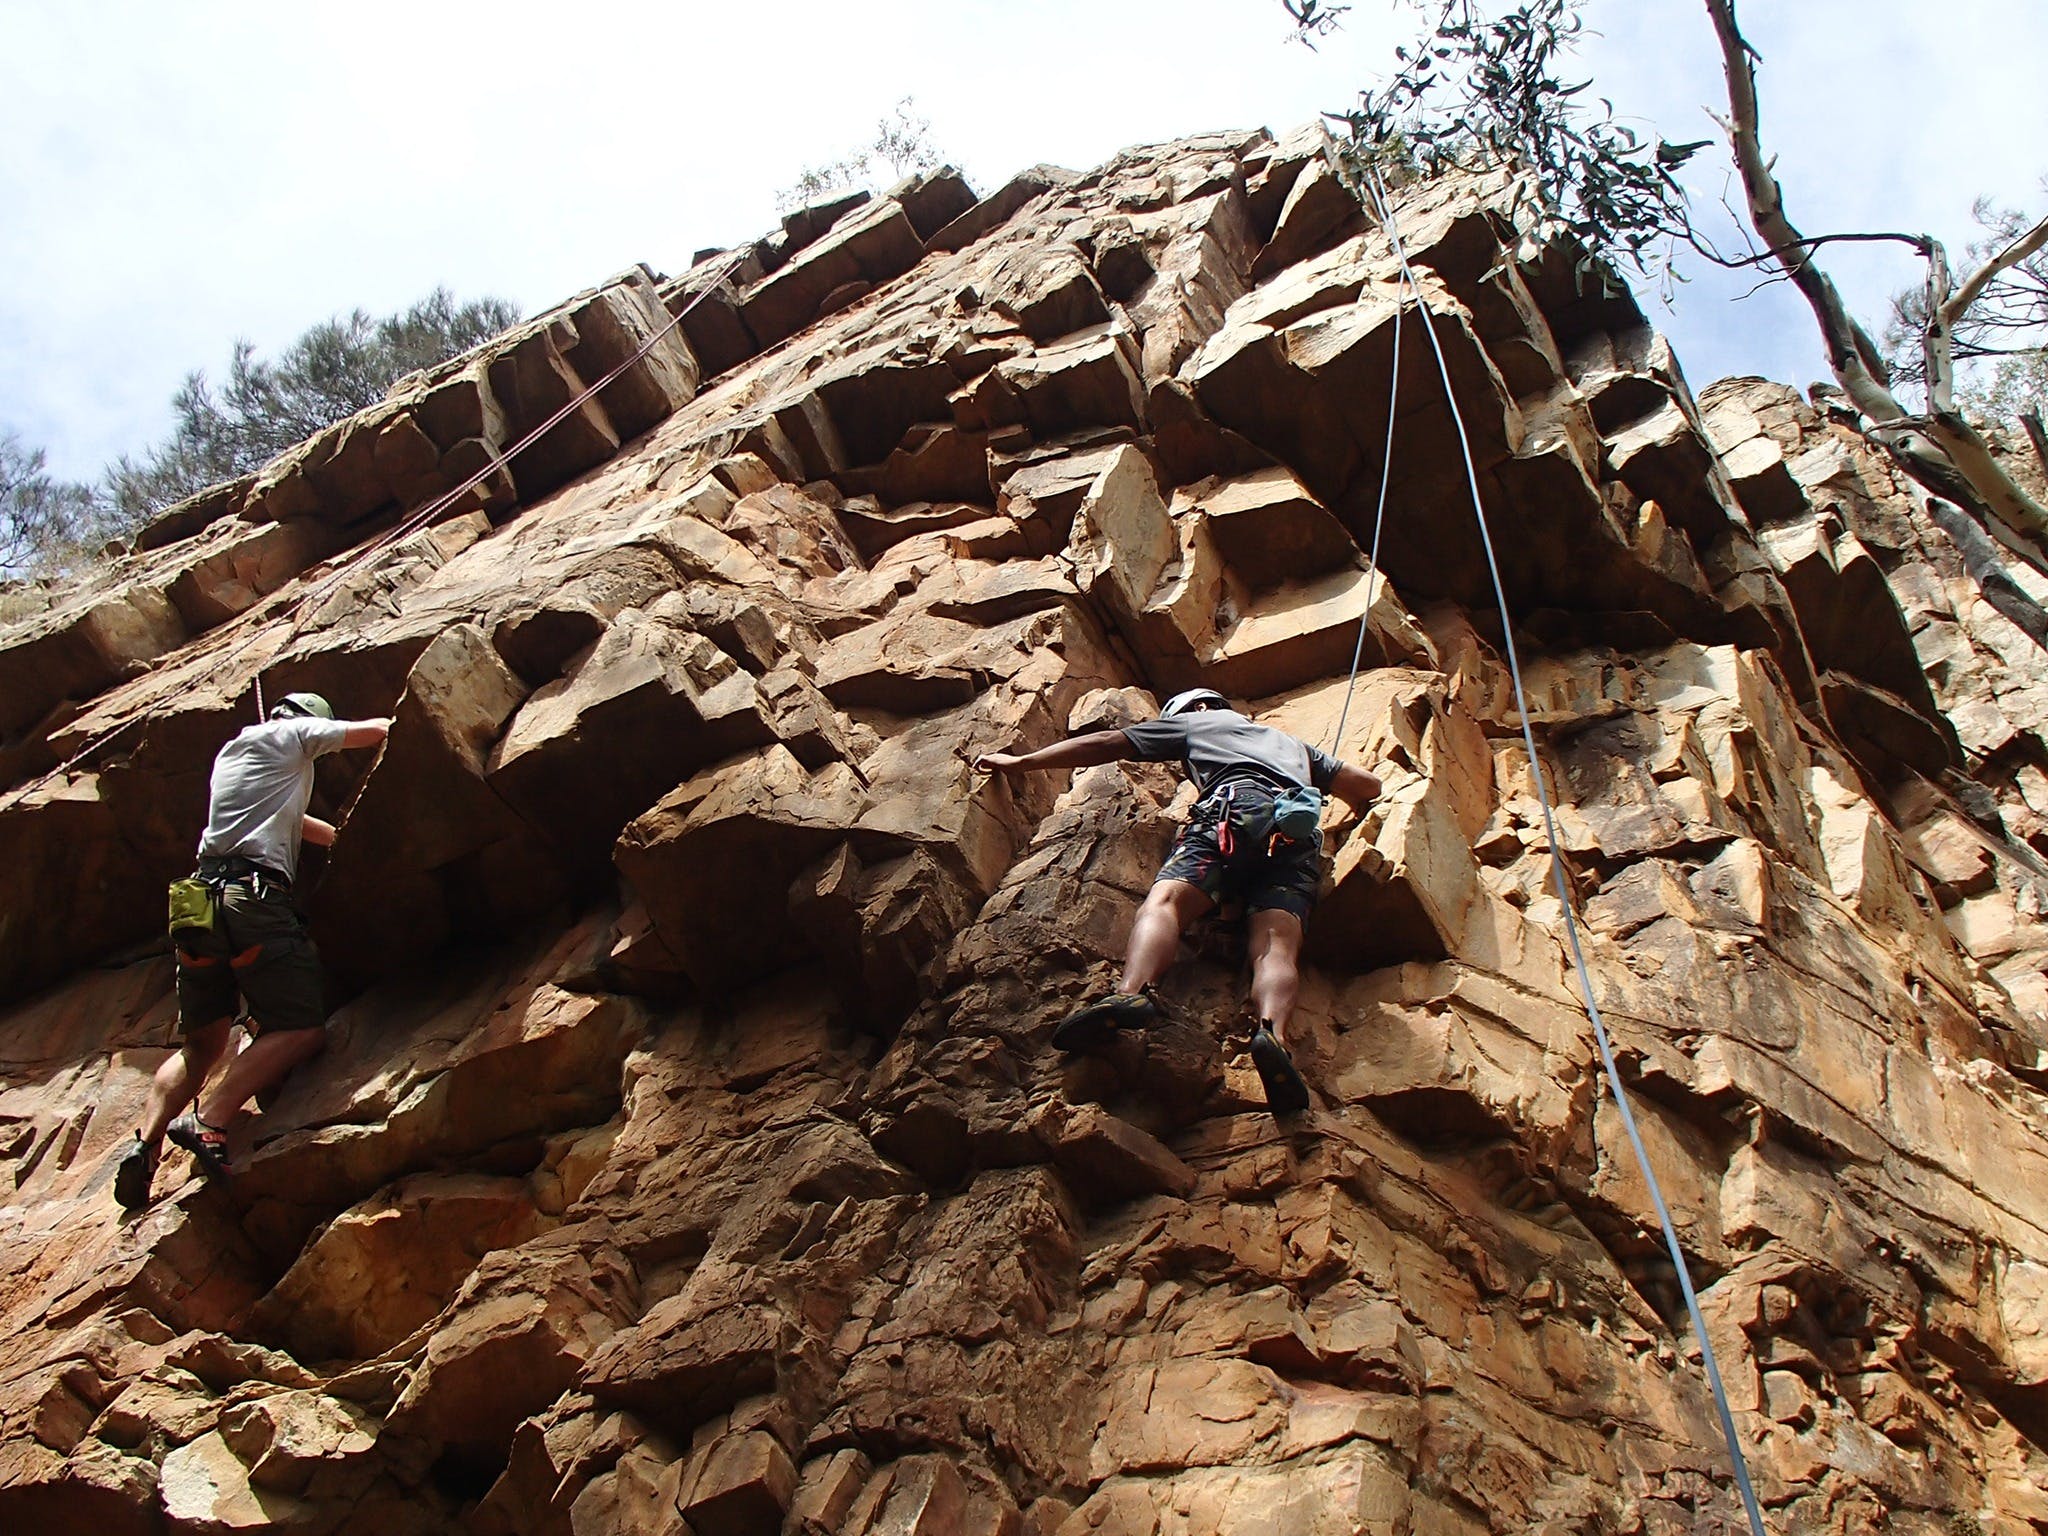 Rock Climbing in Morialta - Carnarvon Accommodation